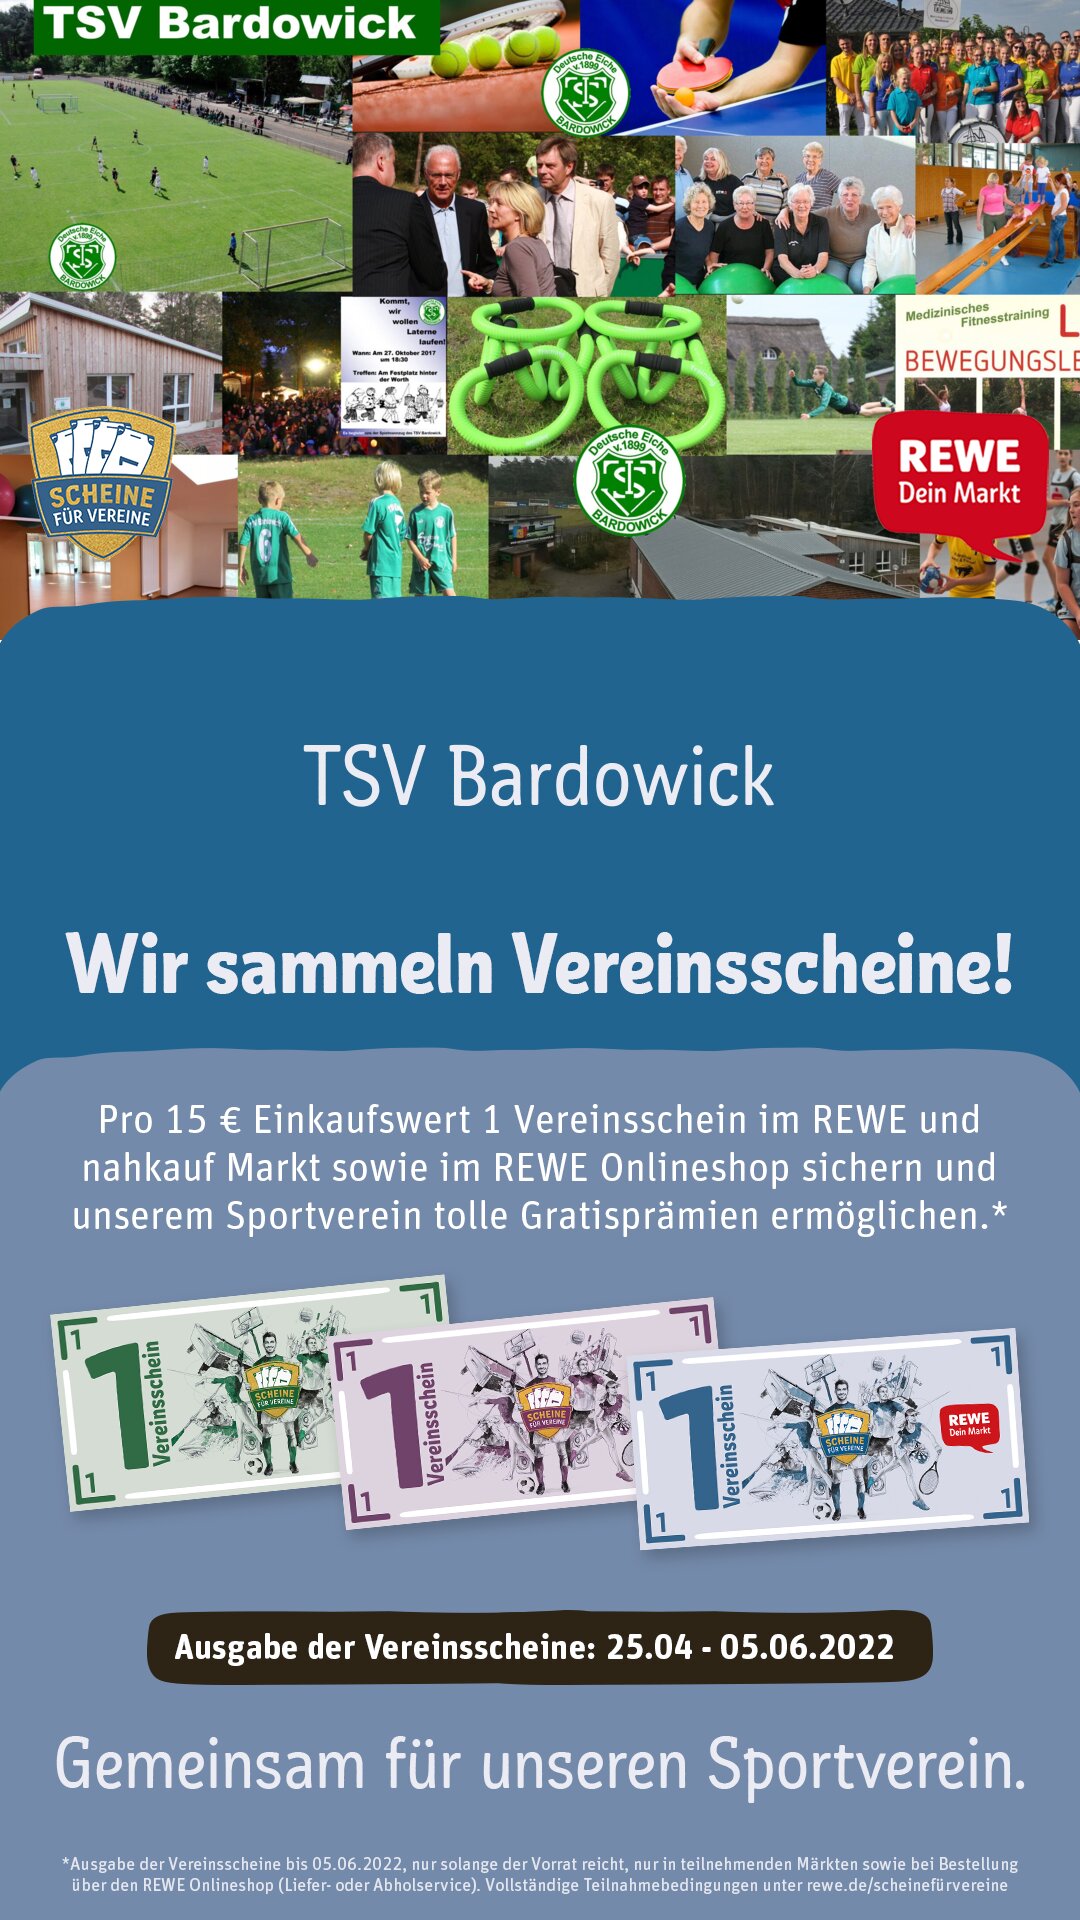 TSVBardowick REWE Scheine fuer Vereine Poster Story